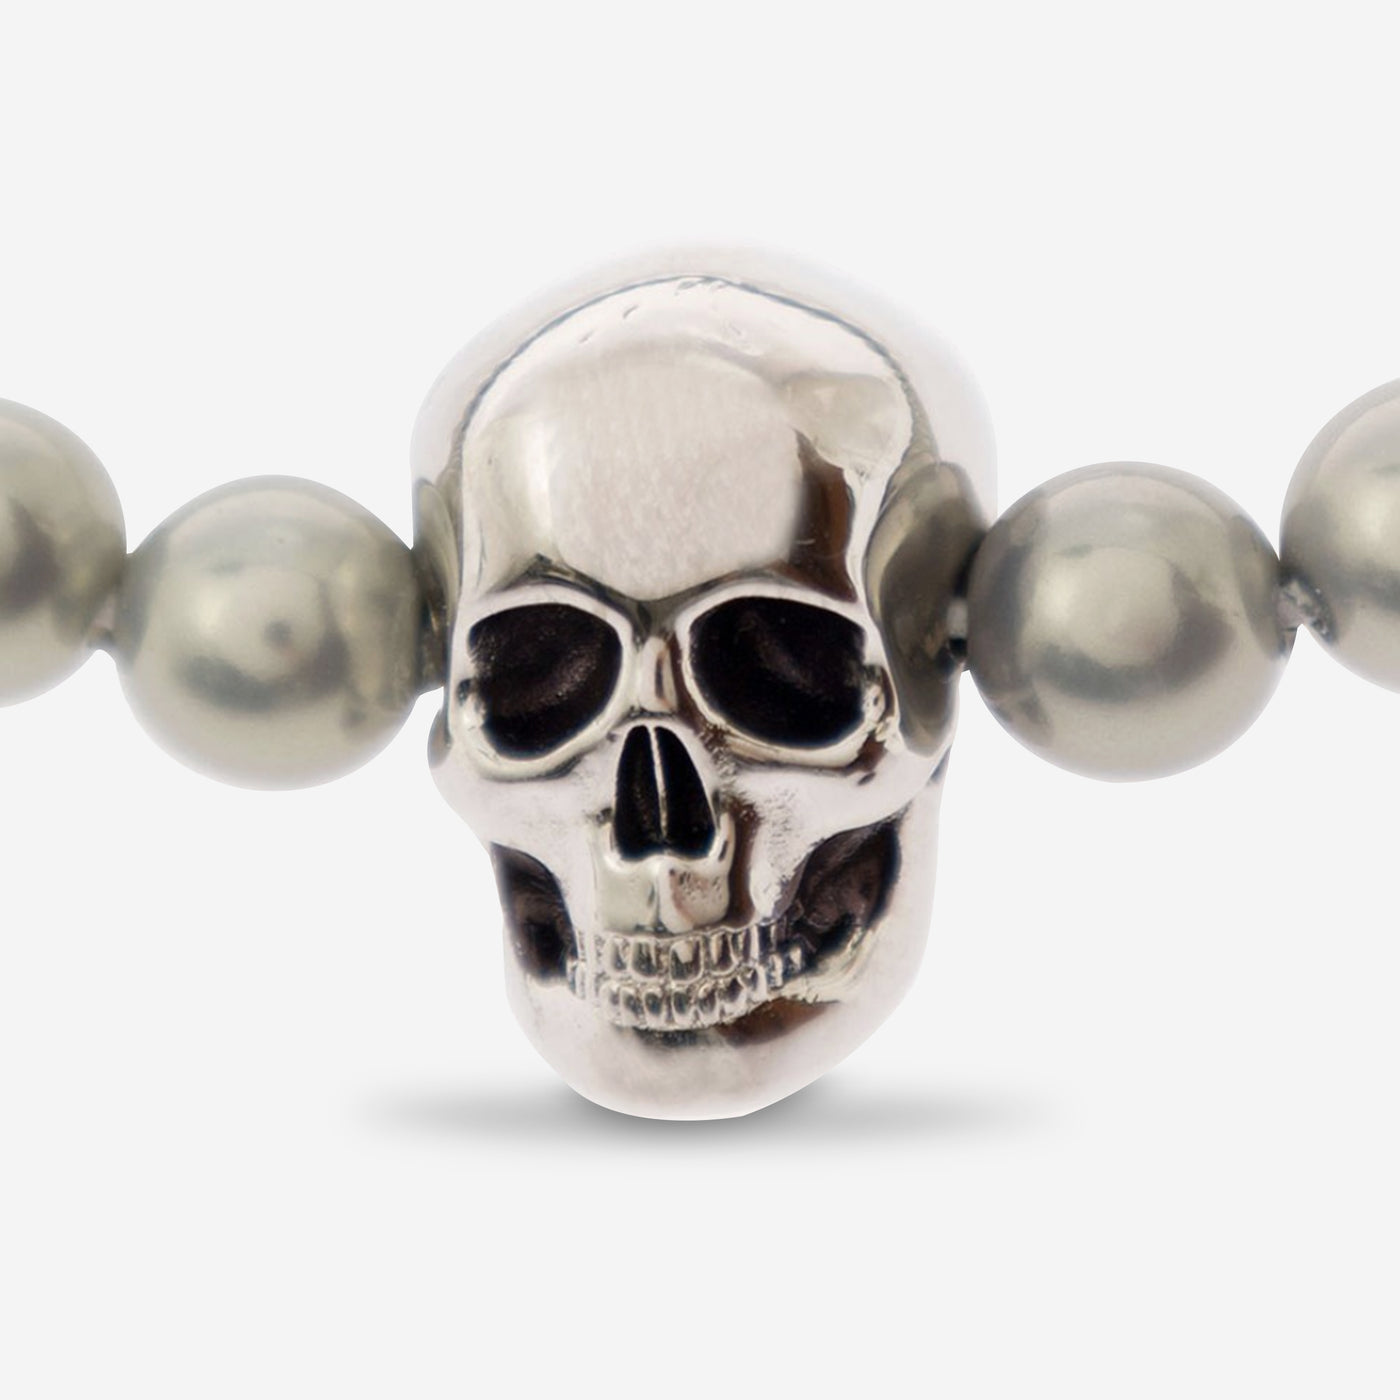 Alexander McQueen Skull Beaded Bracelet